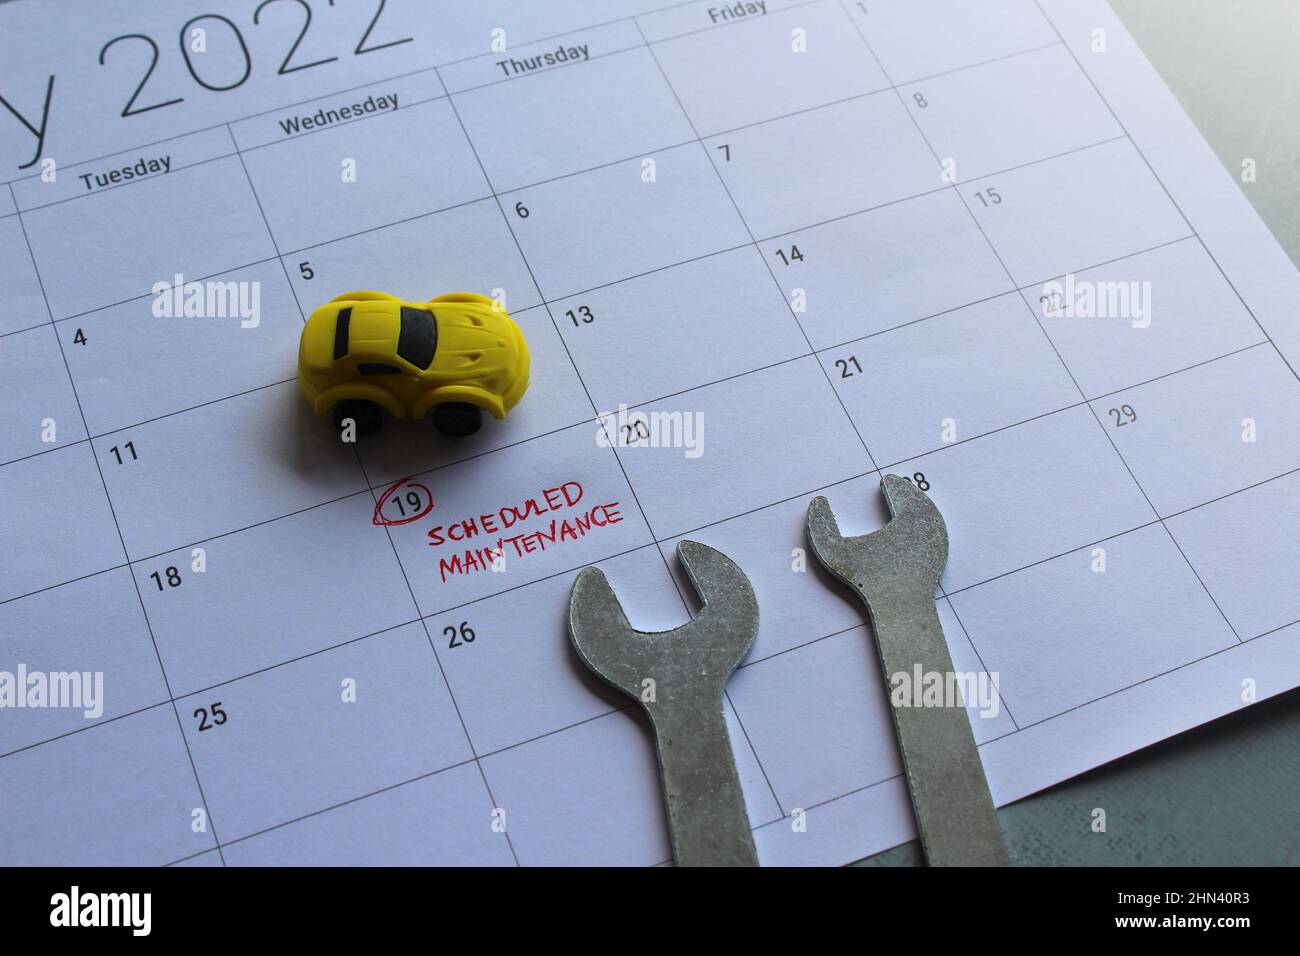 Concept d'entretien programmé de la voiture. Voiture-jouet, clé et calendrier avec texte ENTRETIEN PROGRAMMÉ Banque D'Images